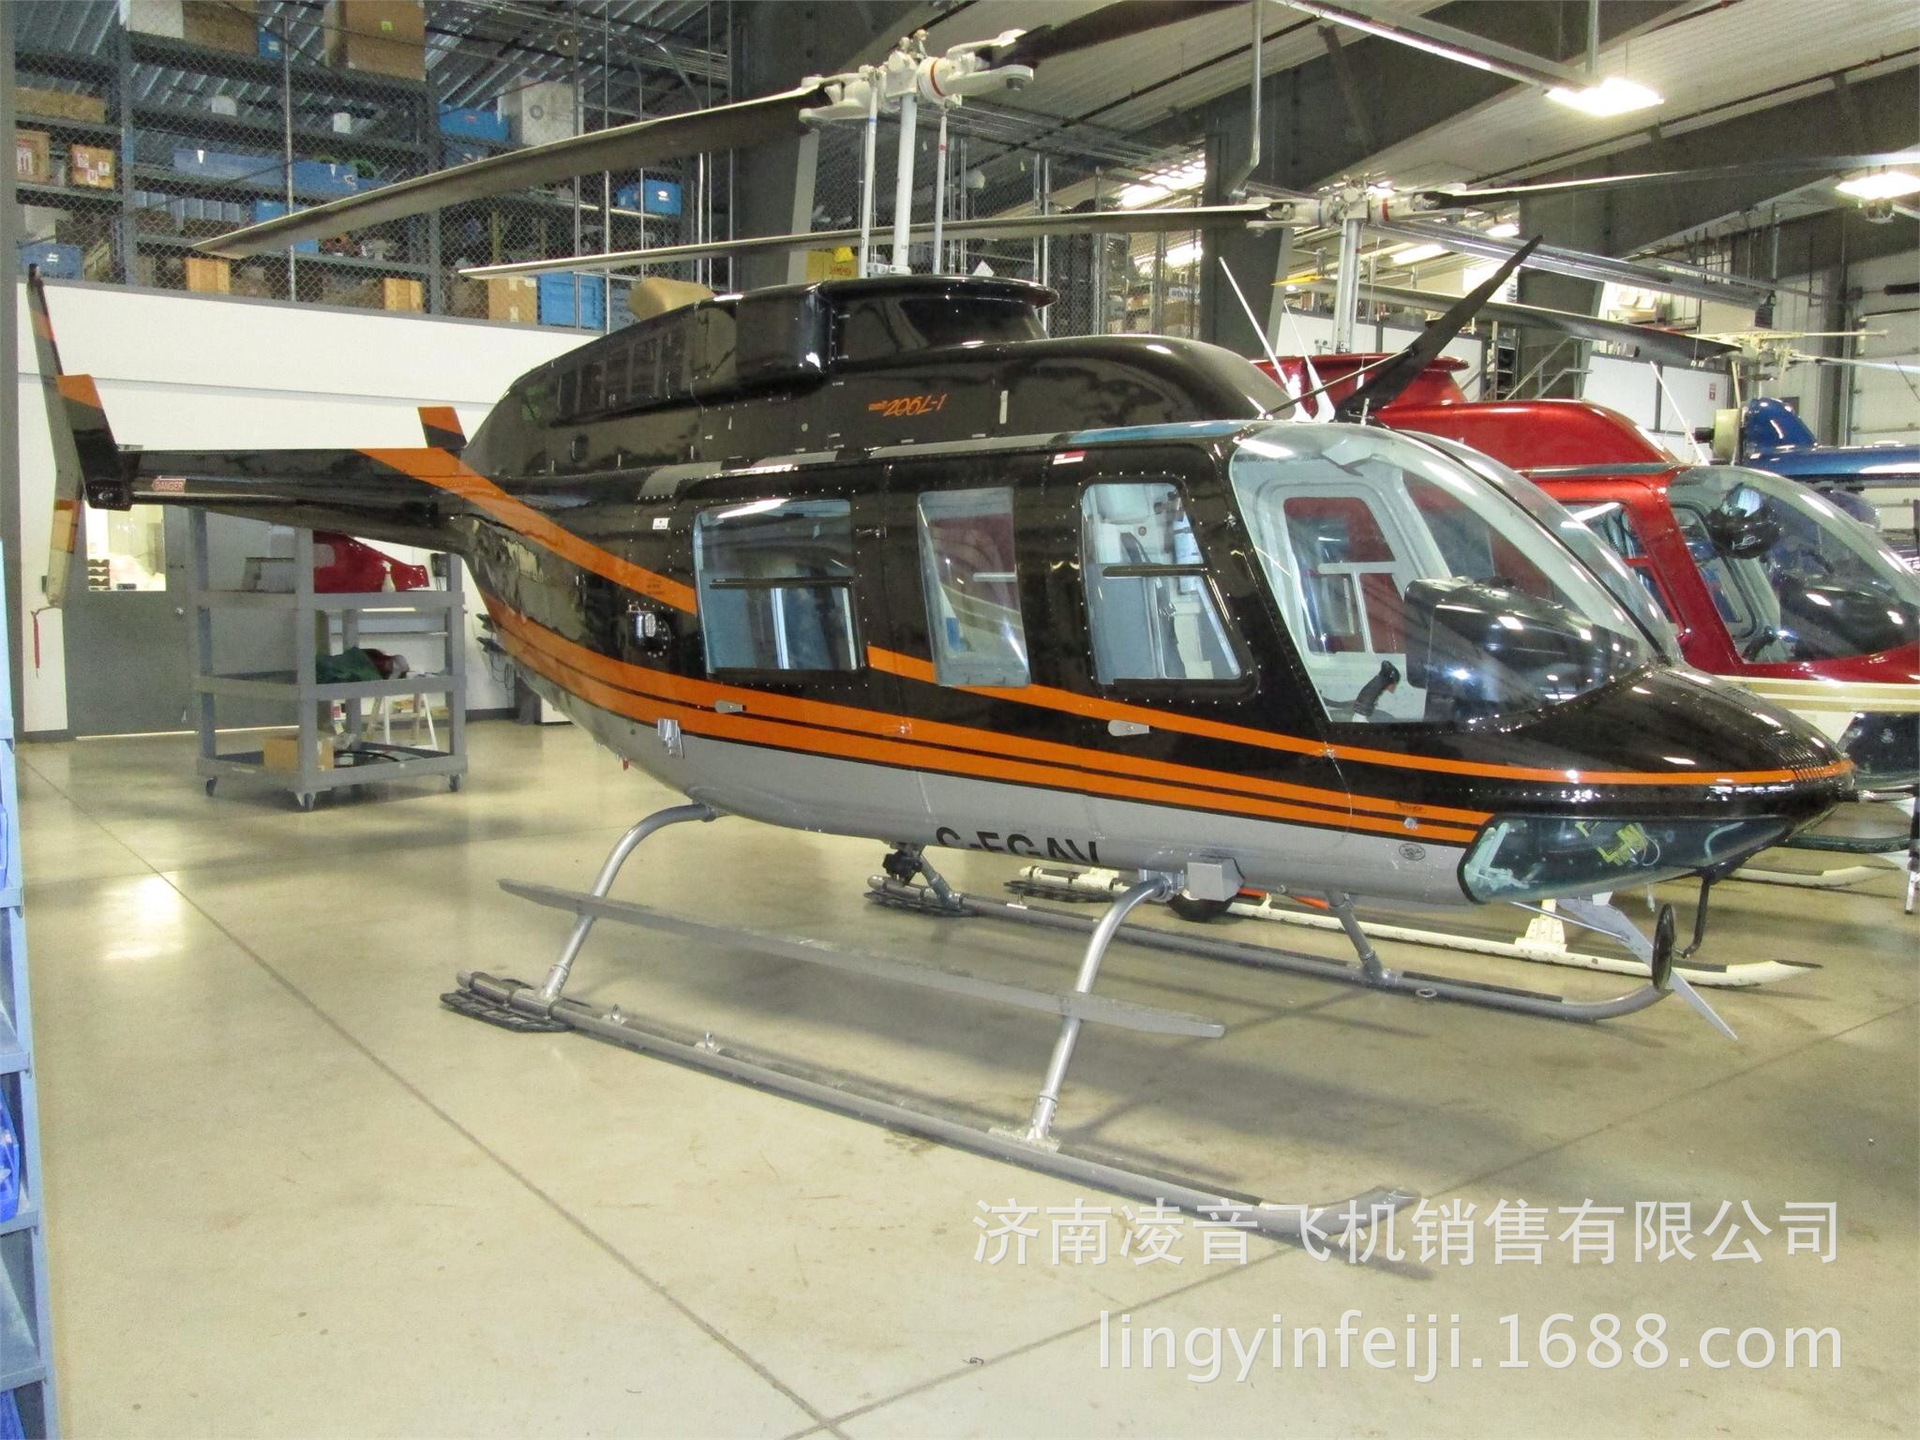 福州私人飞机租赁 78年贝尔206l-1直升机价格 福州直升机价格